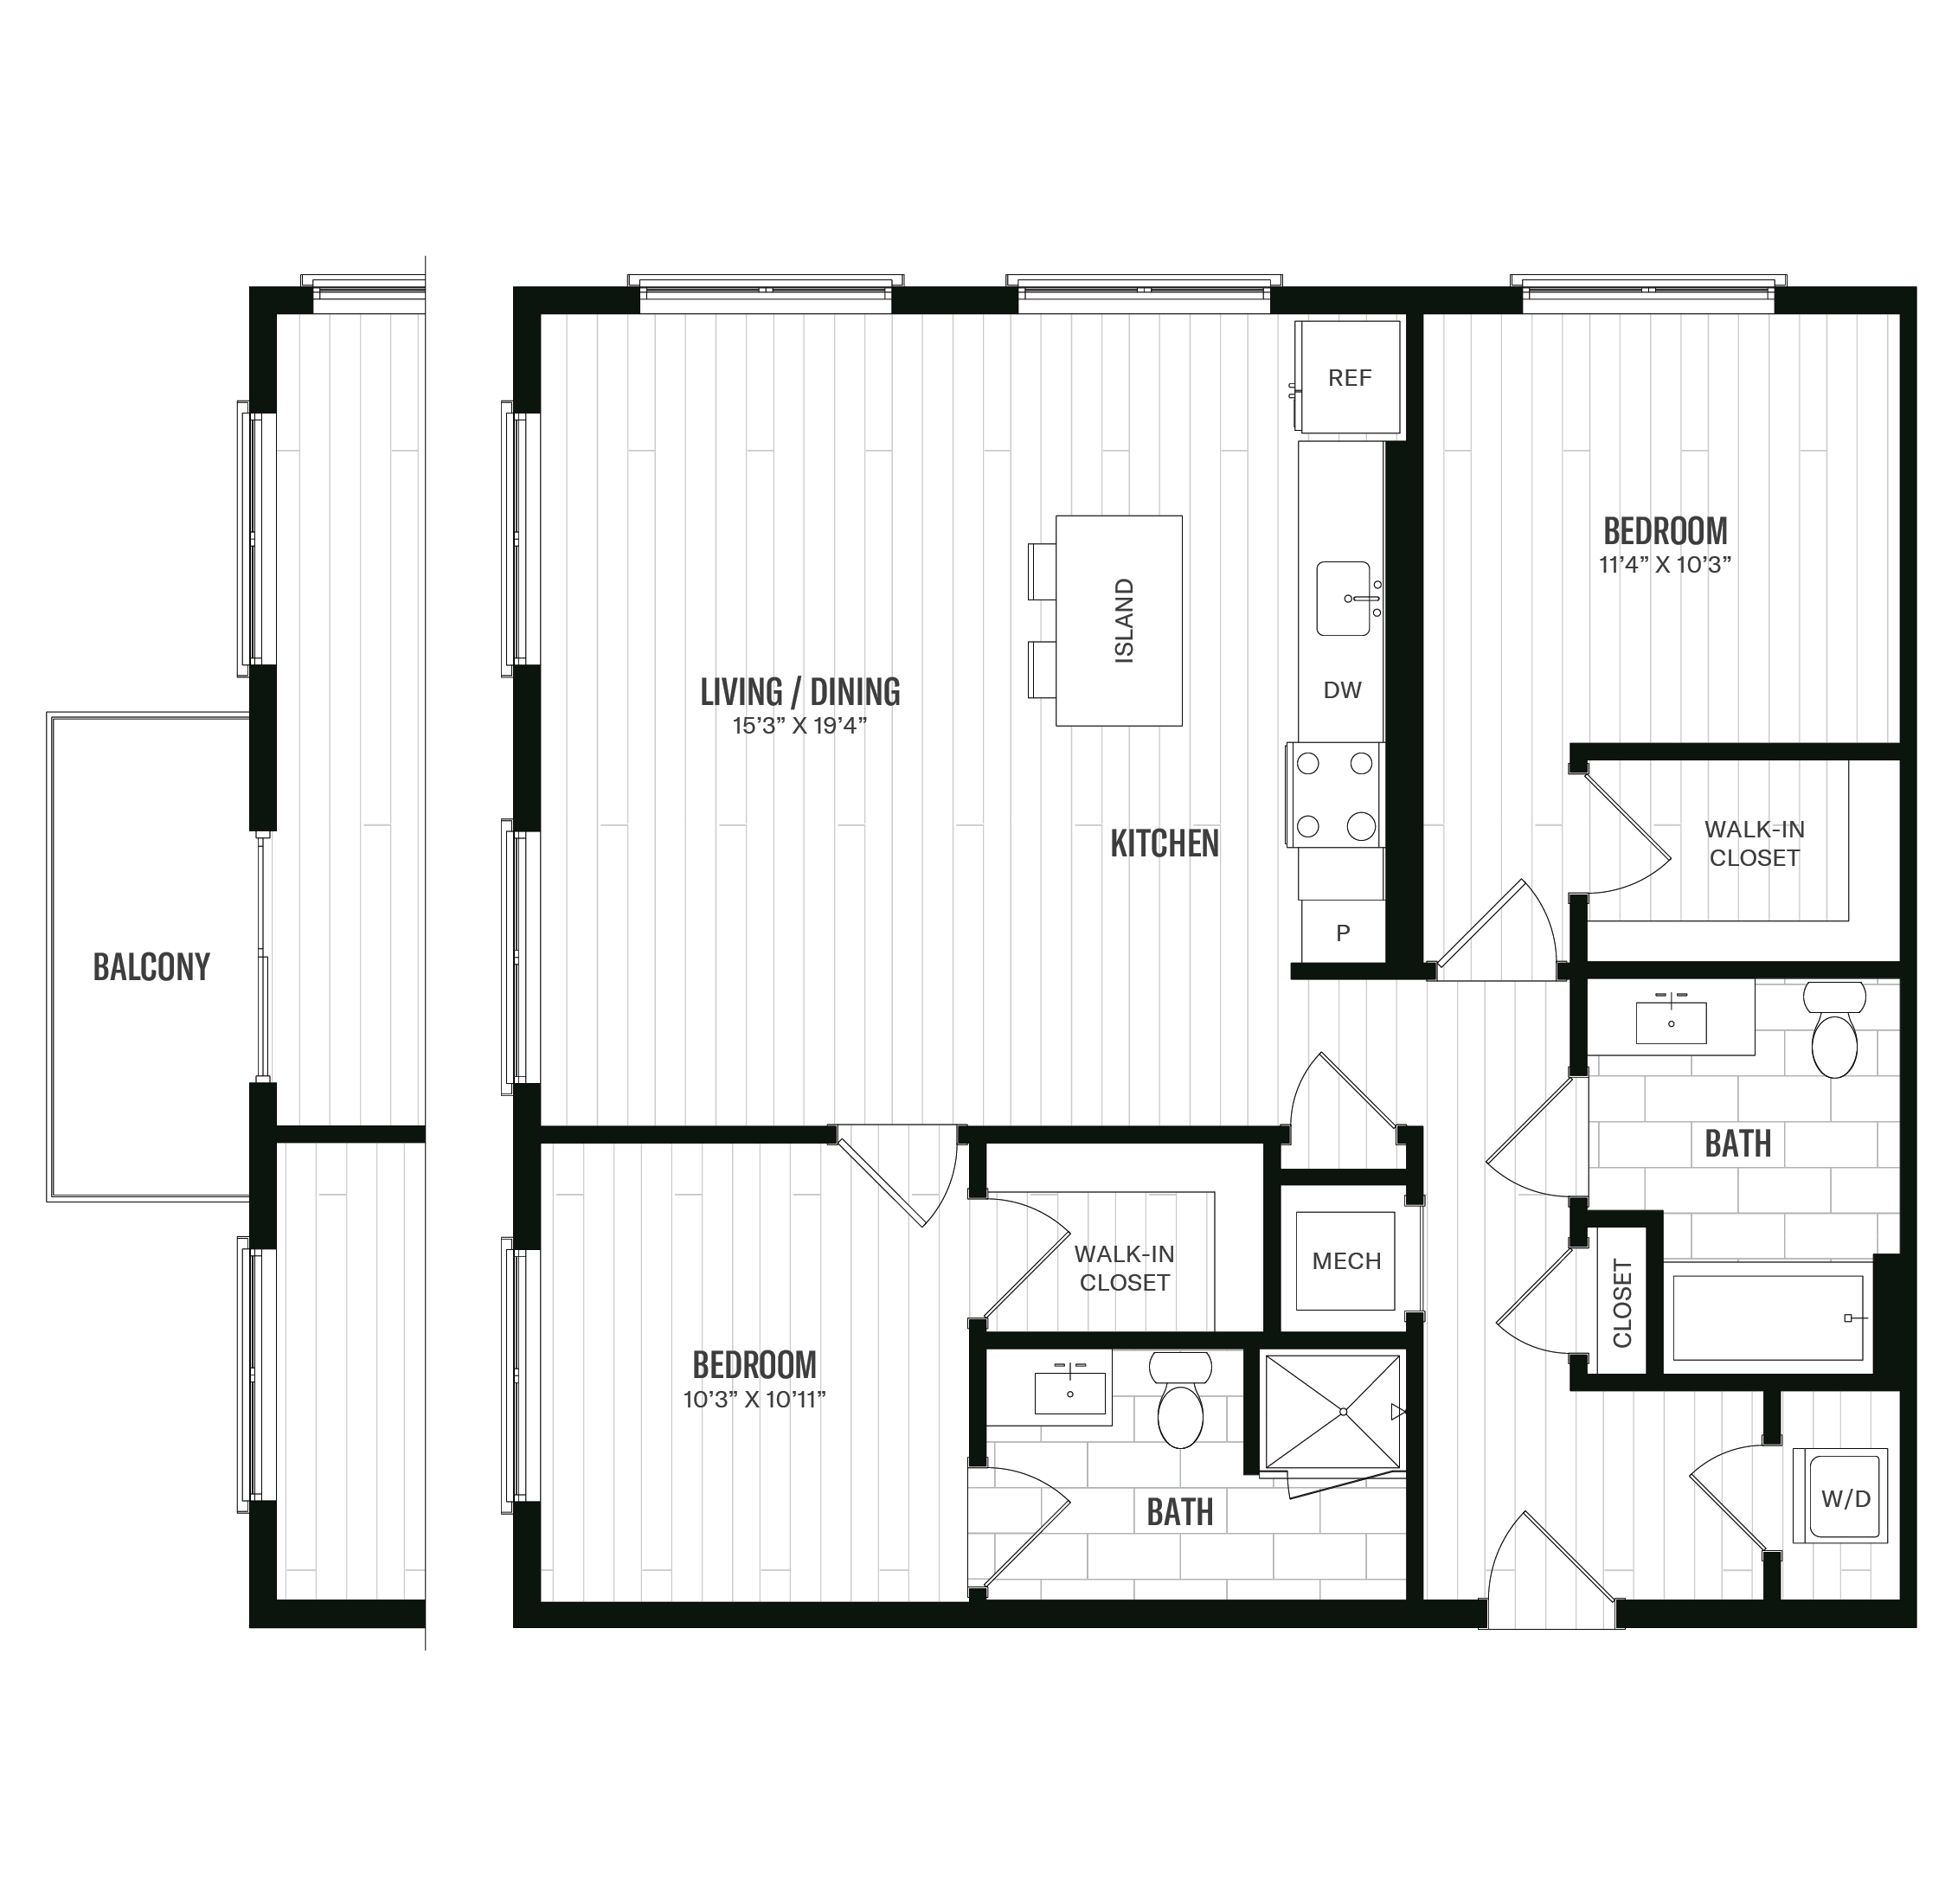 Floorplan image of unit 502